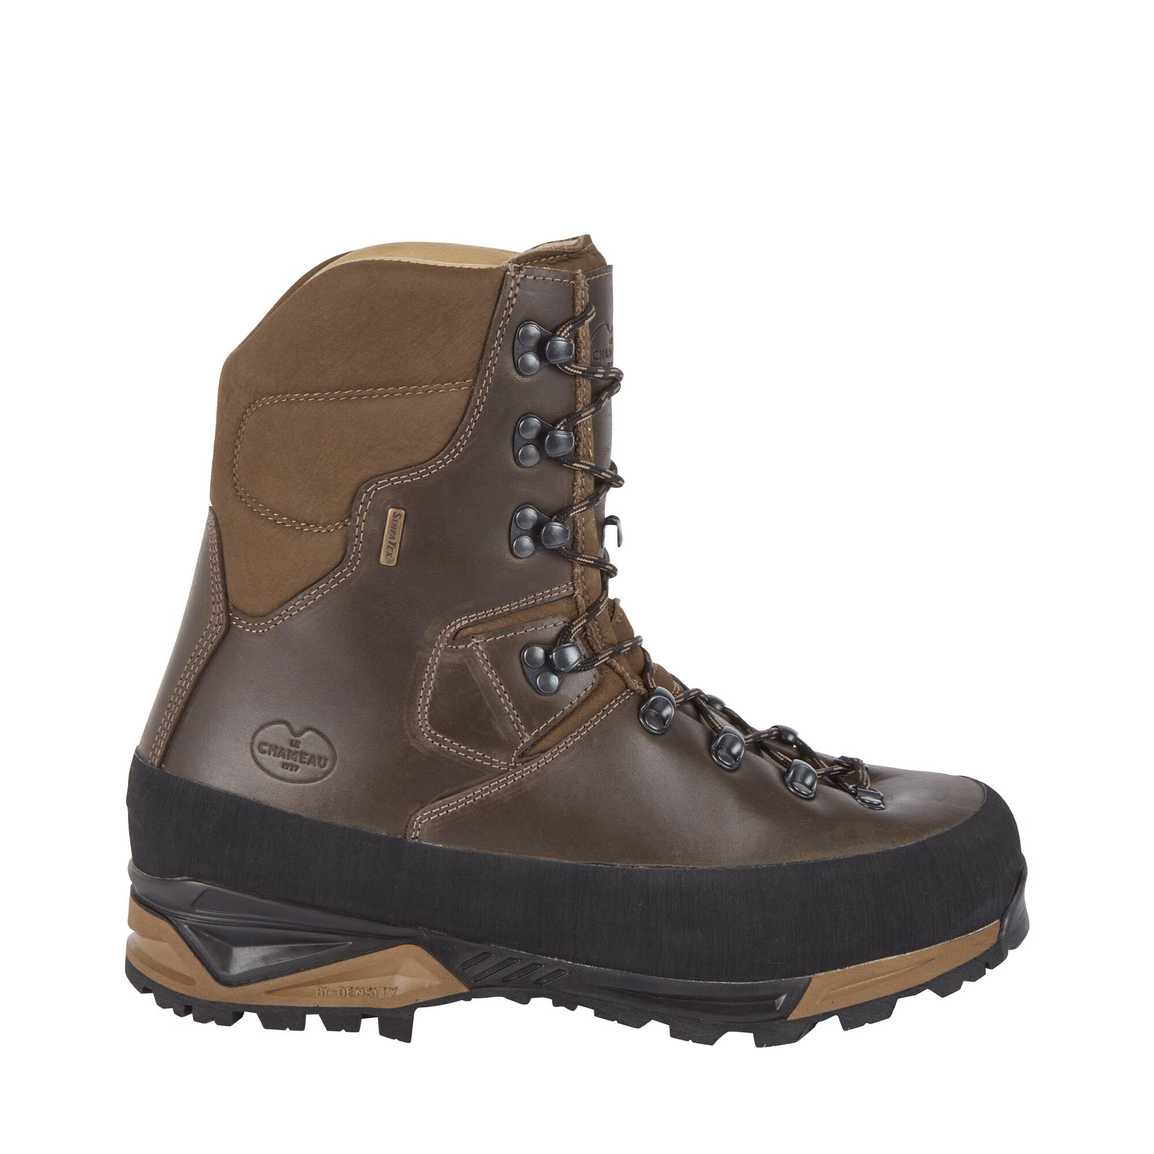 40% OFF LE CHAMEAU Mouflon 2.0 Extreme 10" Leather Boots - Mens - Dark Brown - Size: UK 8.5 & 12.5